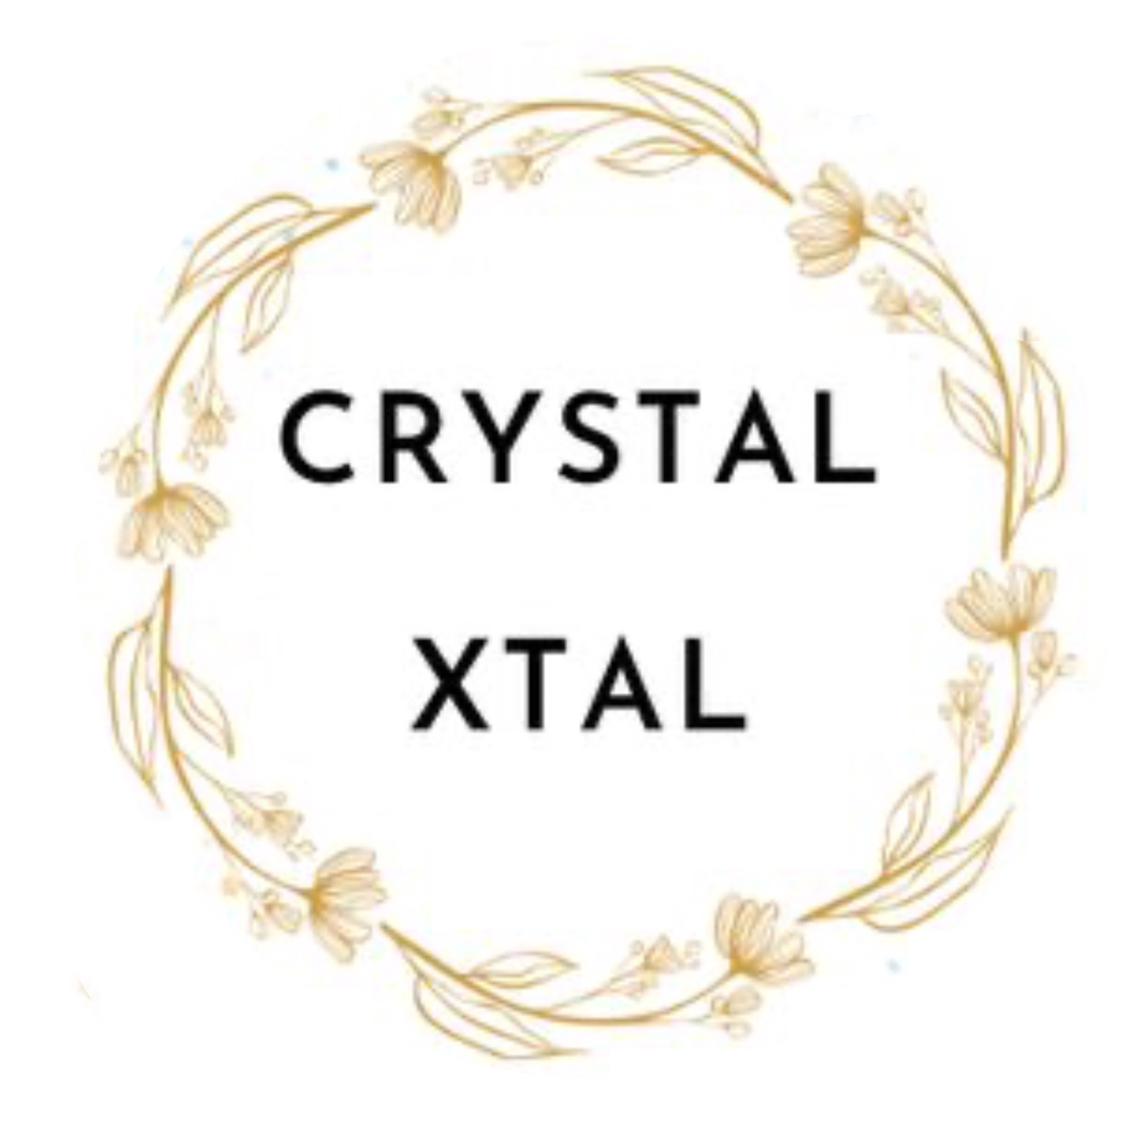 Crystalxtalの画像